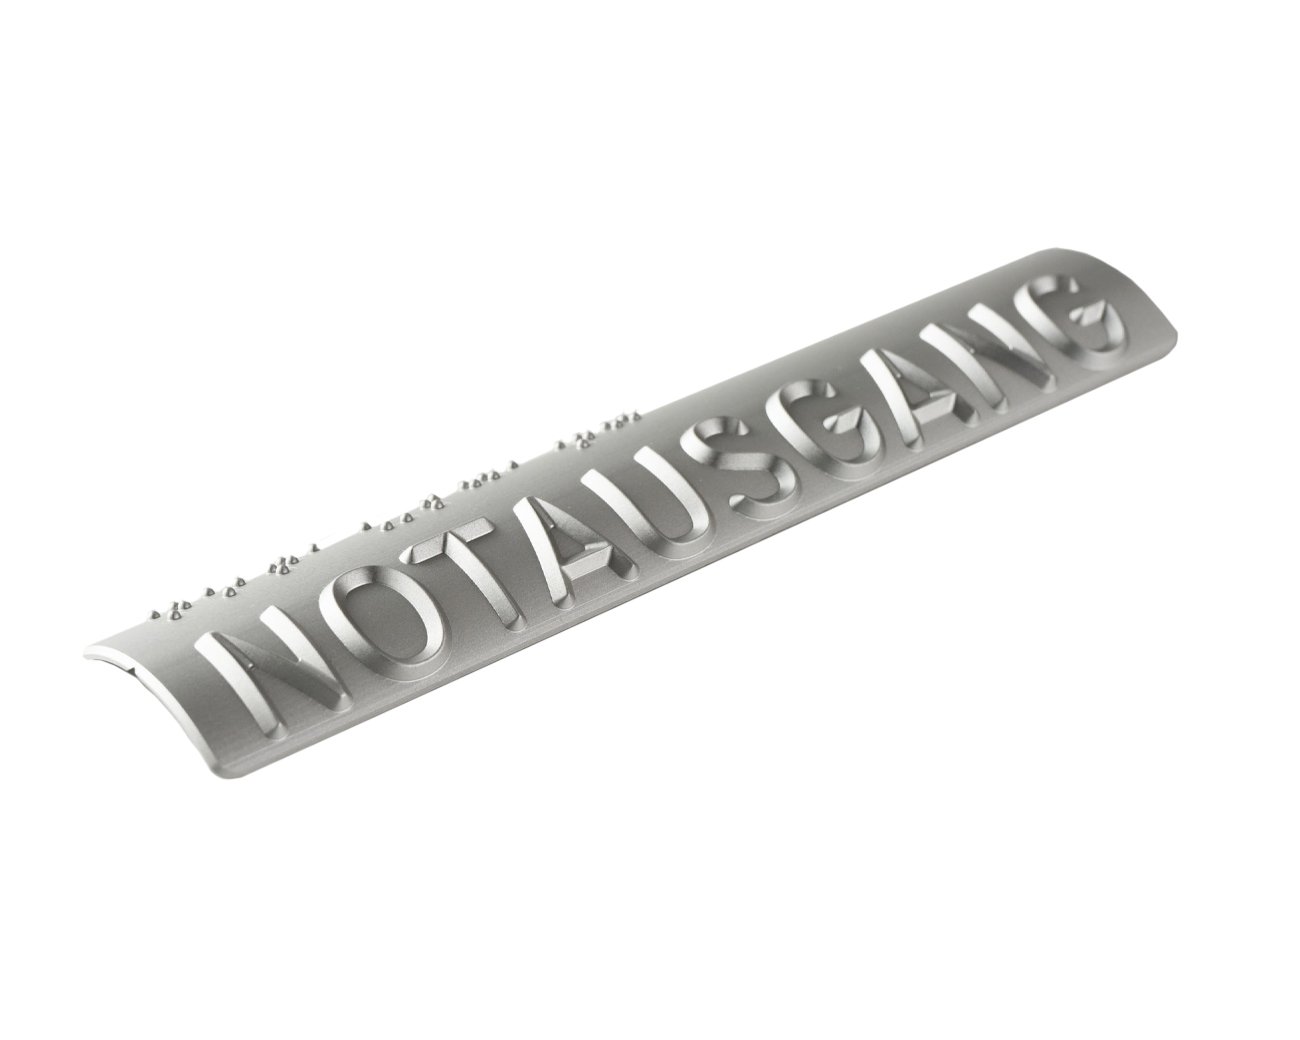 Handlaufschild rund Ø 40mm Aluminium silber eloxiert gefräst nach DIN32986 AUSGANG / NOTAUSGANG